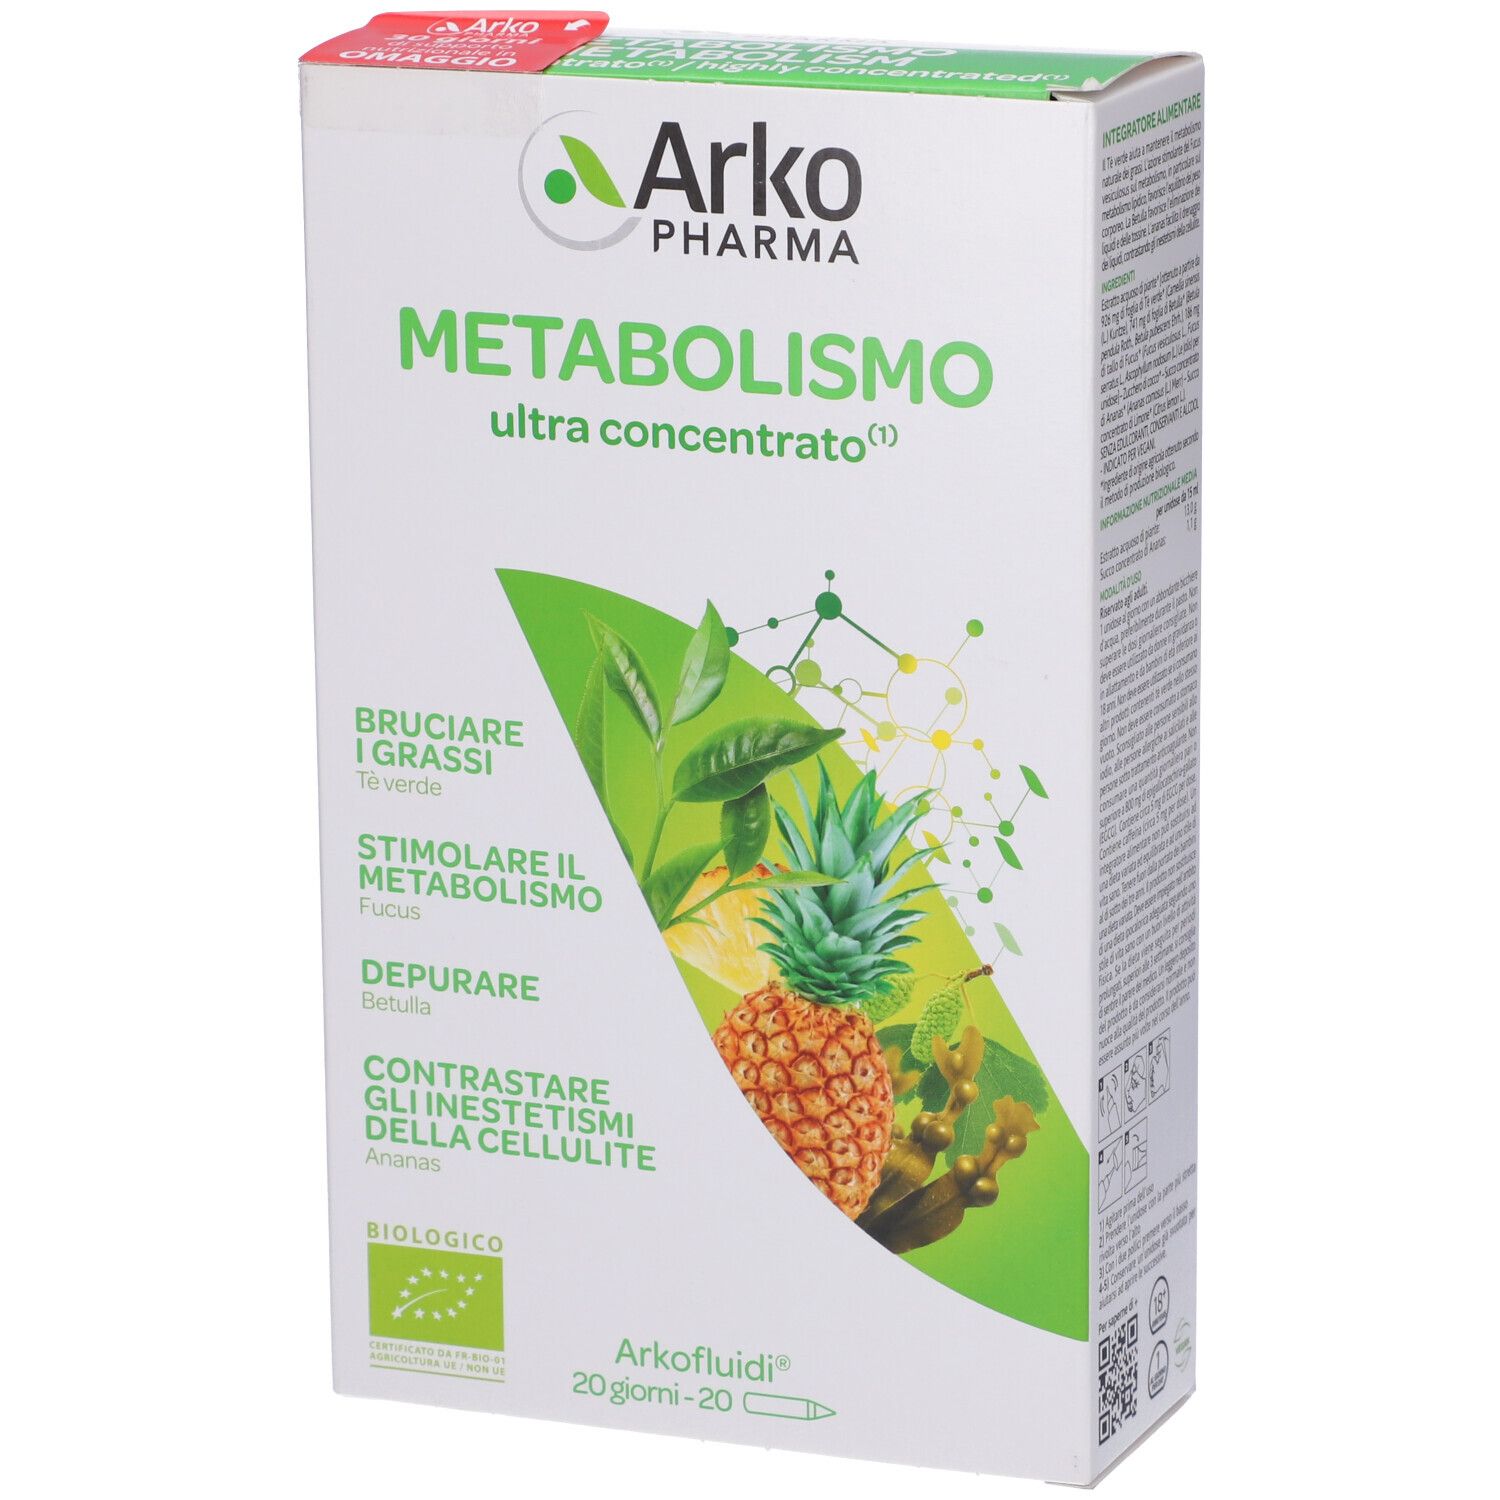 Arkopharma Arkofluidi Metabolismo Bio